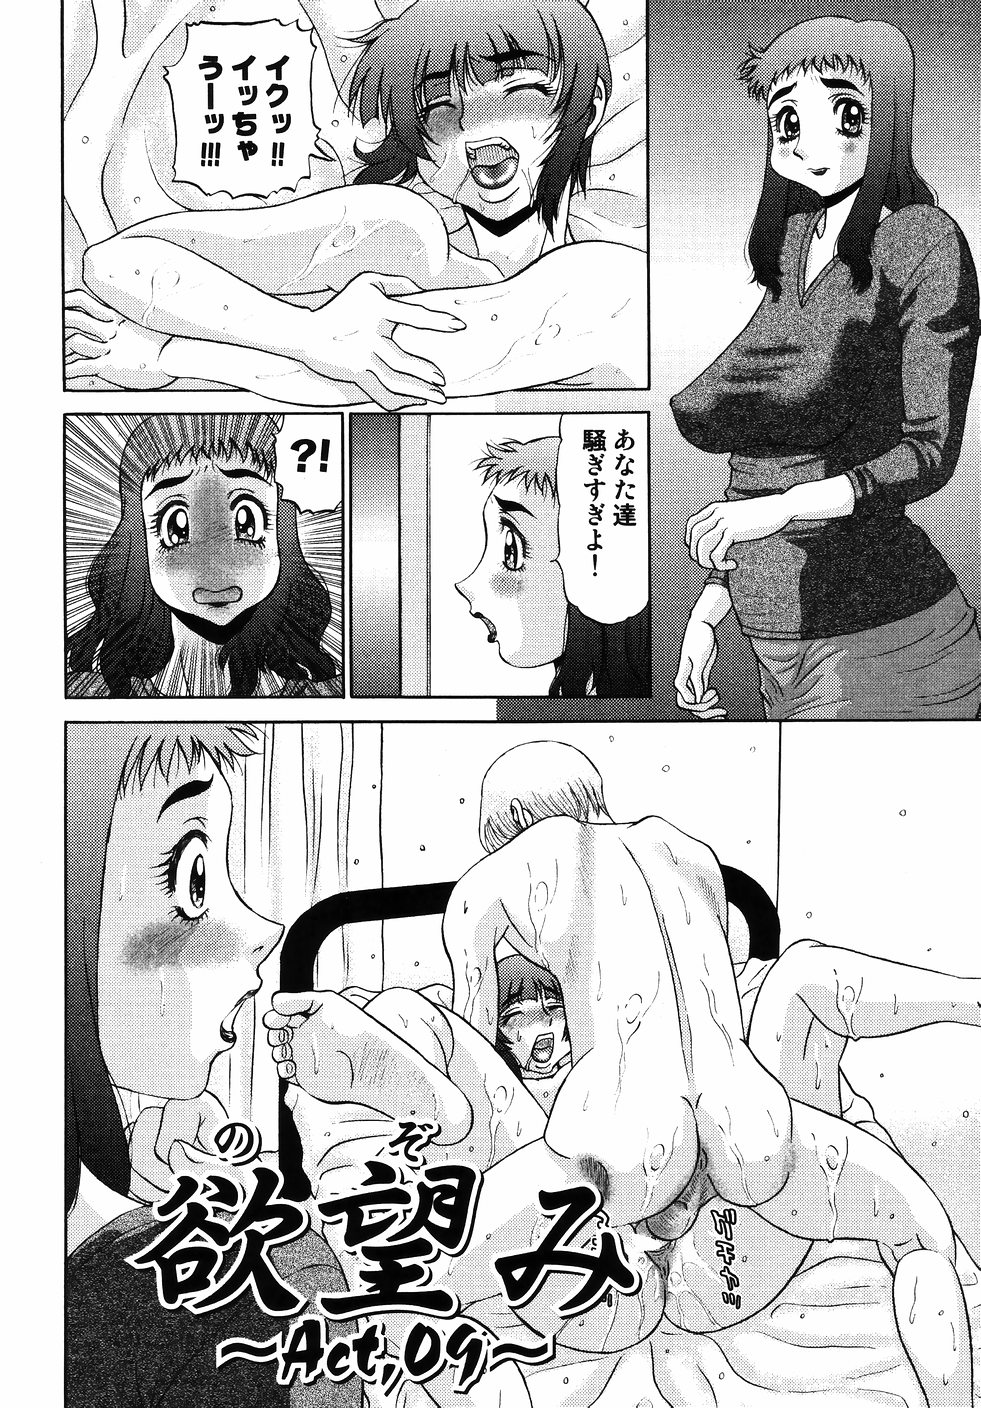 [PJ-1] Nozomi 2 page 26 full